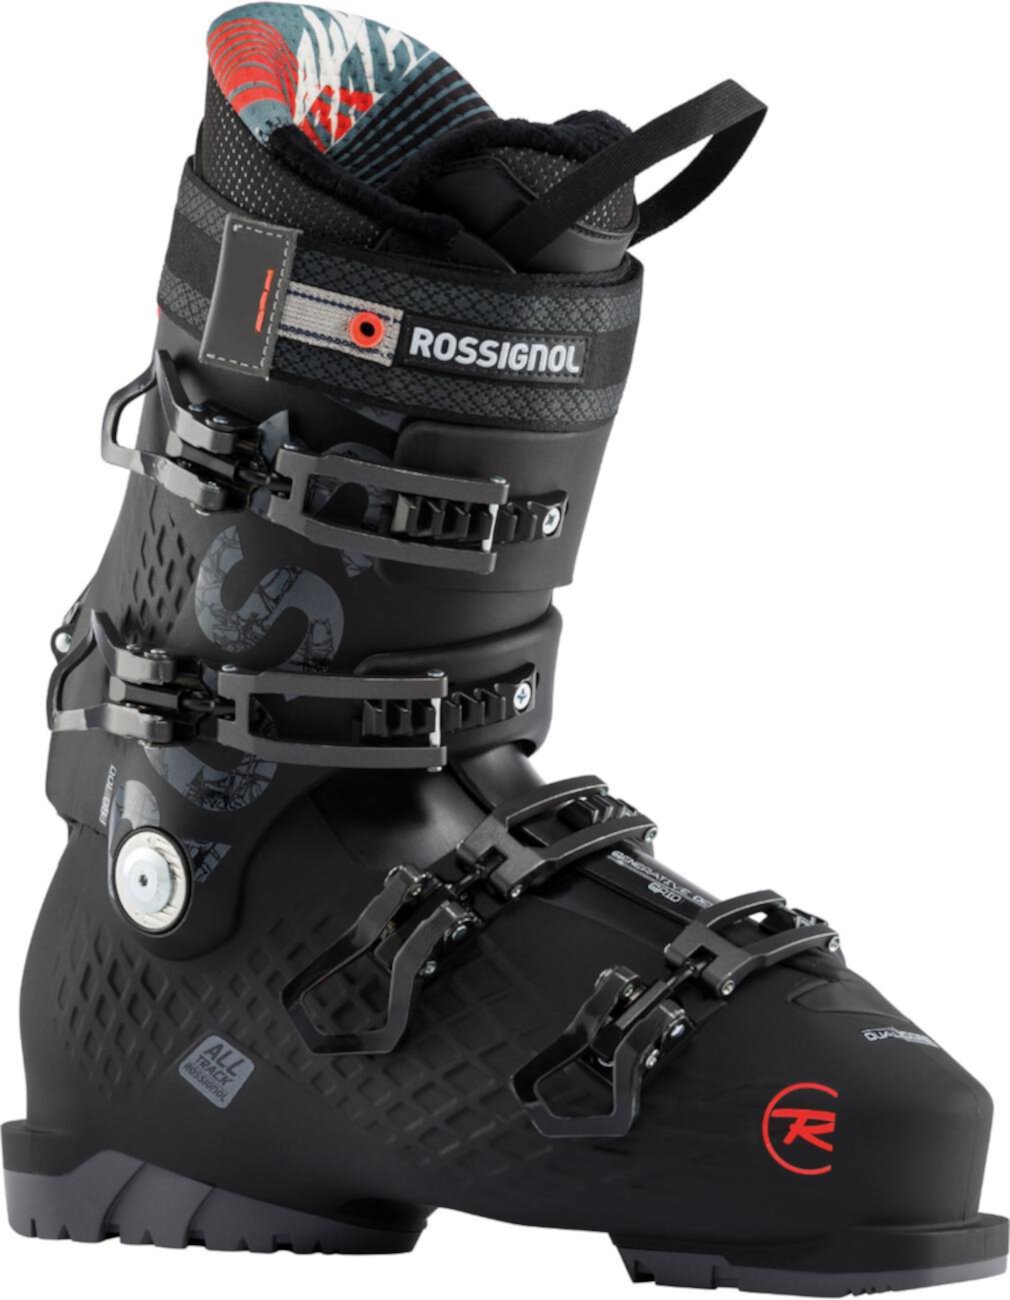 Лыжные ботинки Alltrack Pro 100 - мужские - 2019/2020 ROSSIGNOL